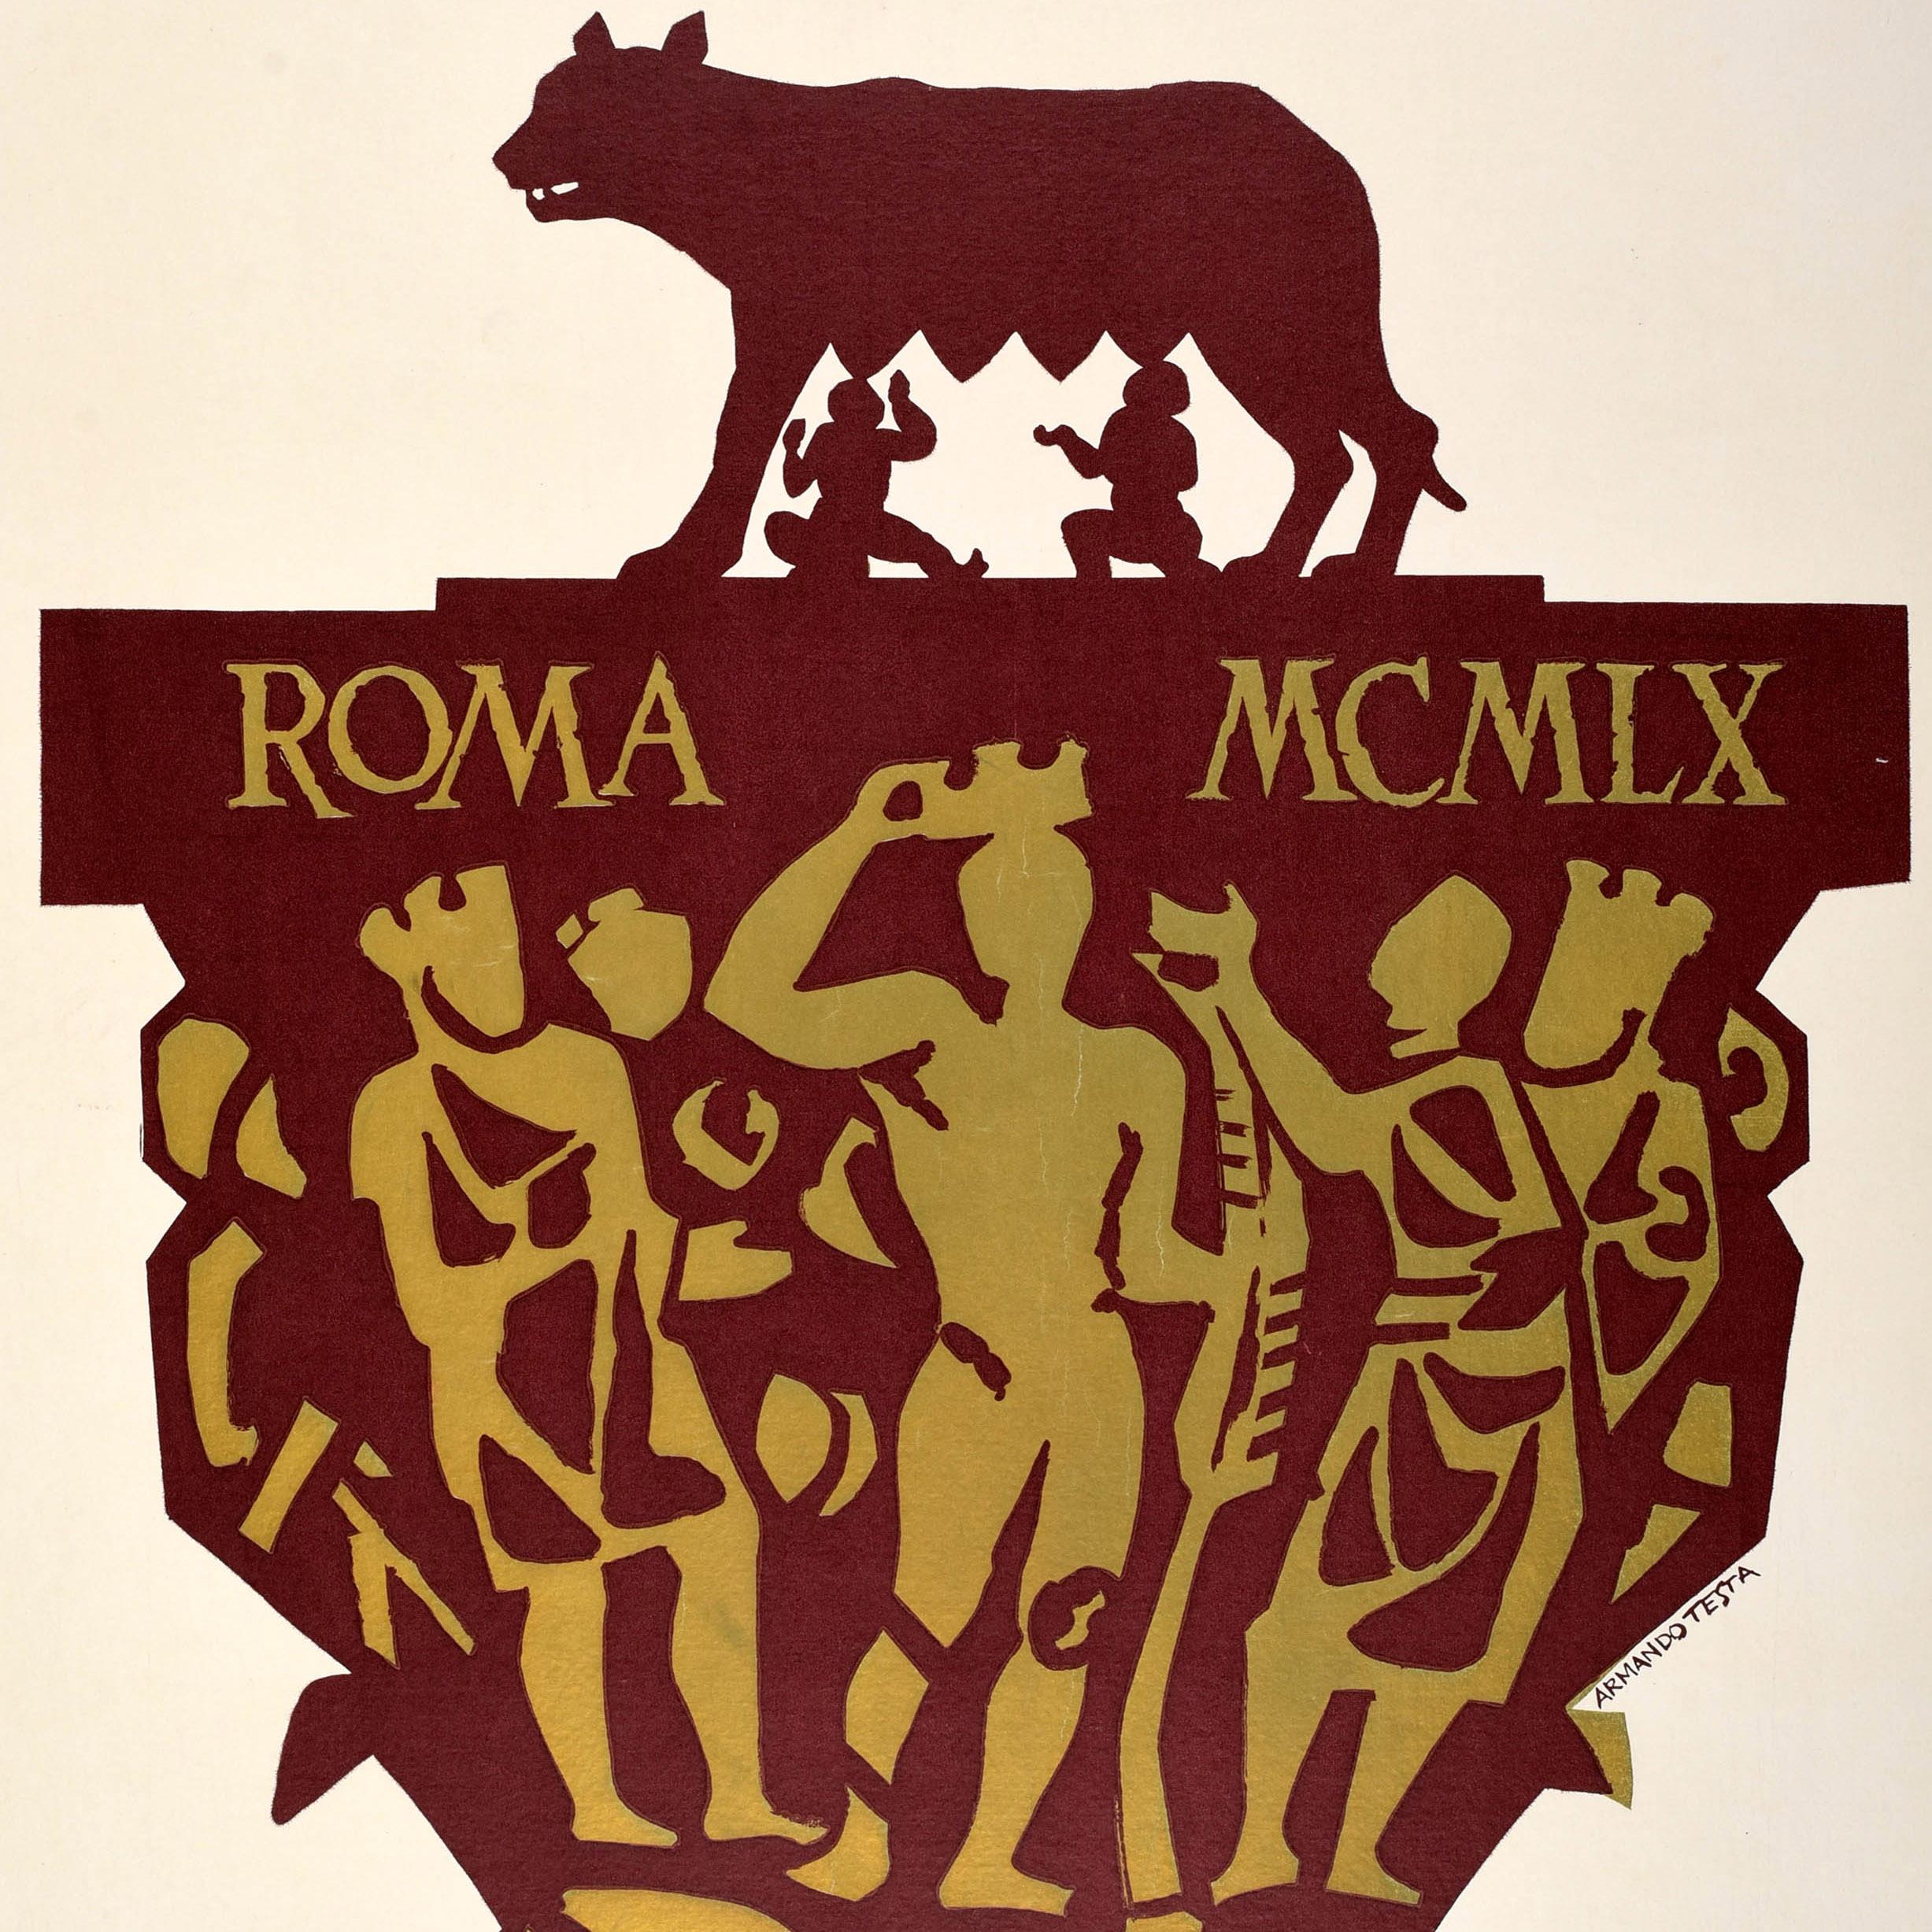 Très rare affiche sportive d'époque pour les XVIIe Jeux Olympiques de Rome présentant un superbe dessin d'Armando Testa (1917-1992) avec un texte en russe. Le design représente les frères jumeaux Romulus et Remus allaités par la louve du Capitole